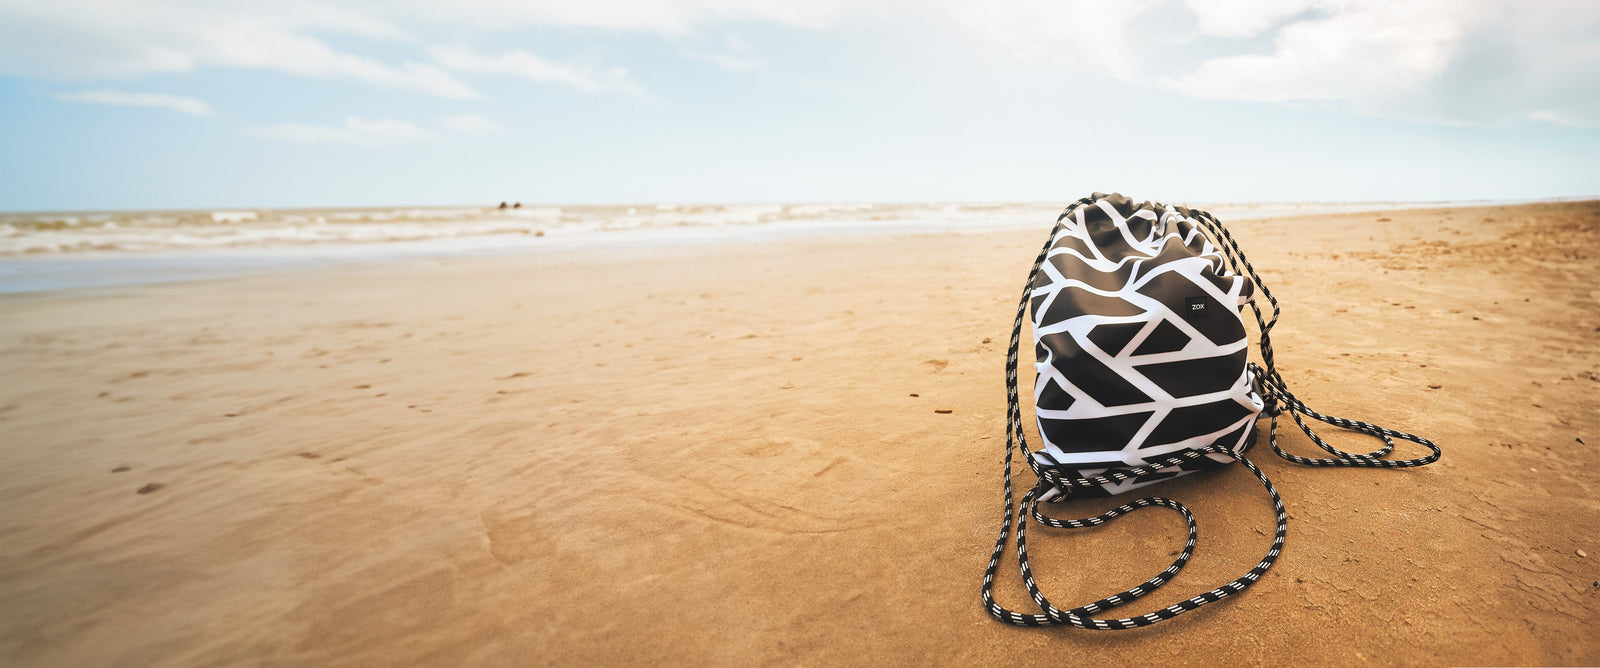 ZOX Drawstring bag on a beach